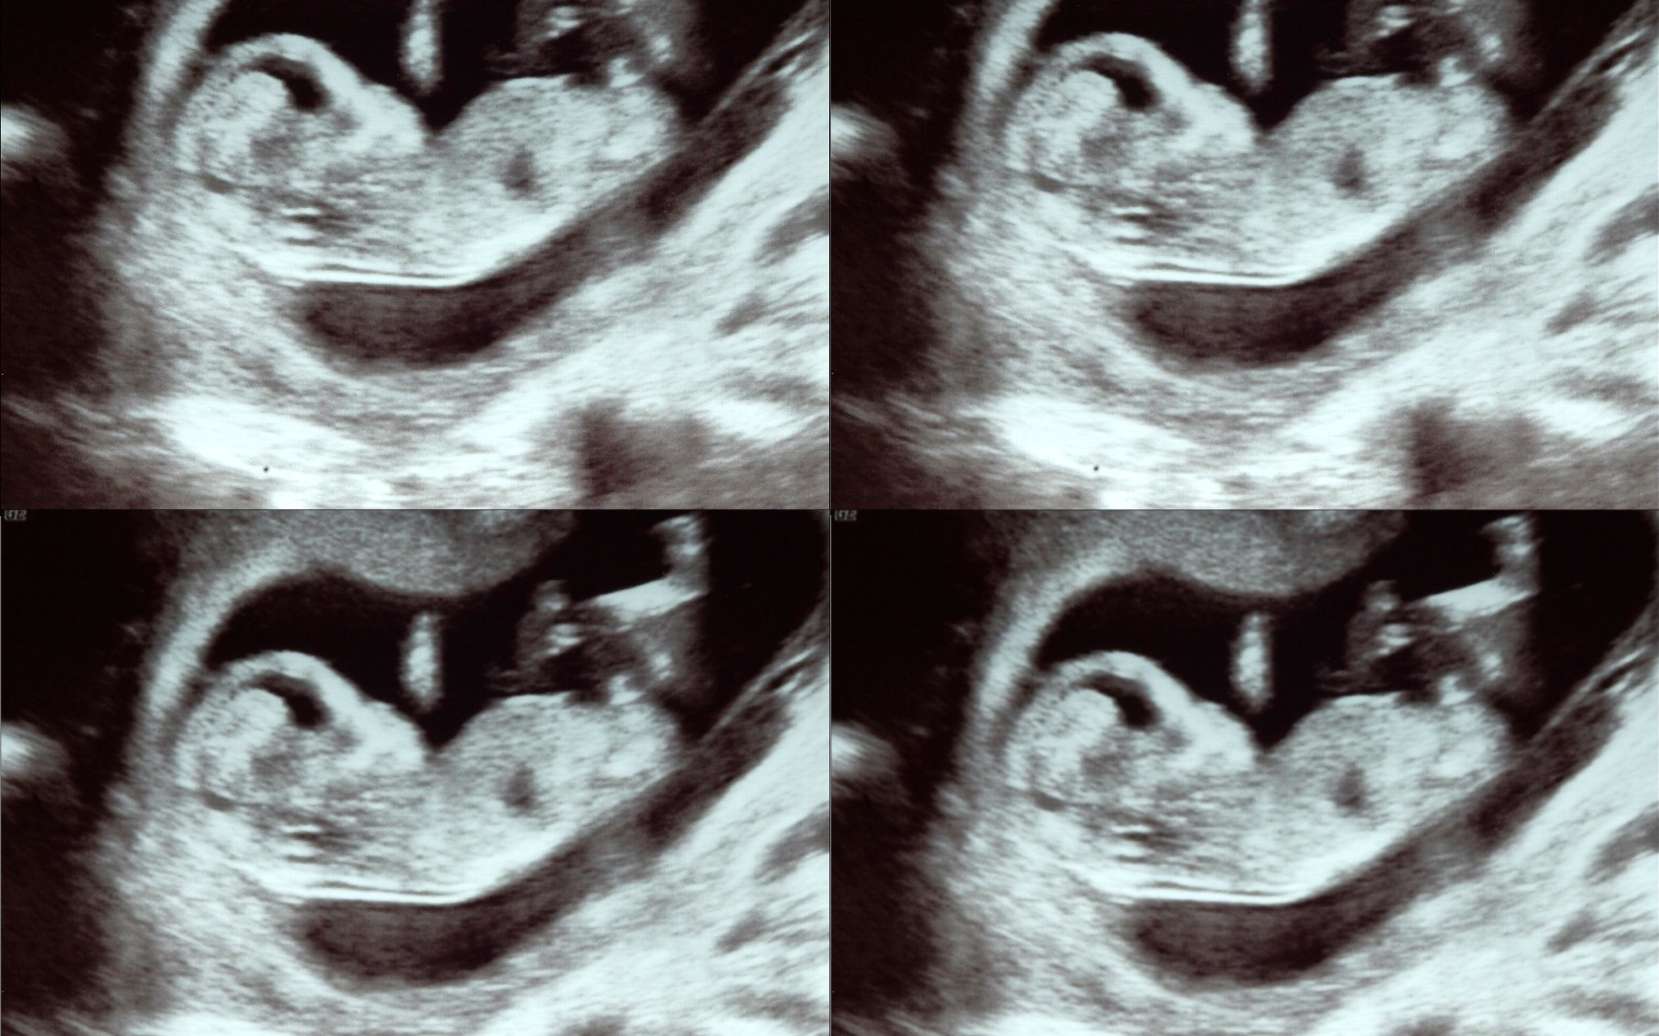 Patient bizarre : enceinte de quadruplés dans deux utérus différents